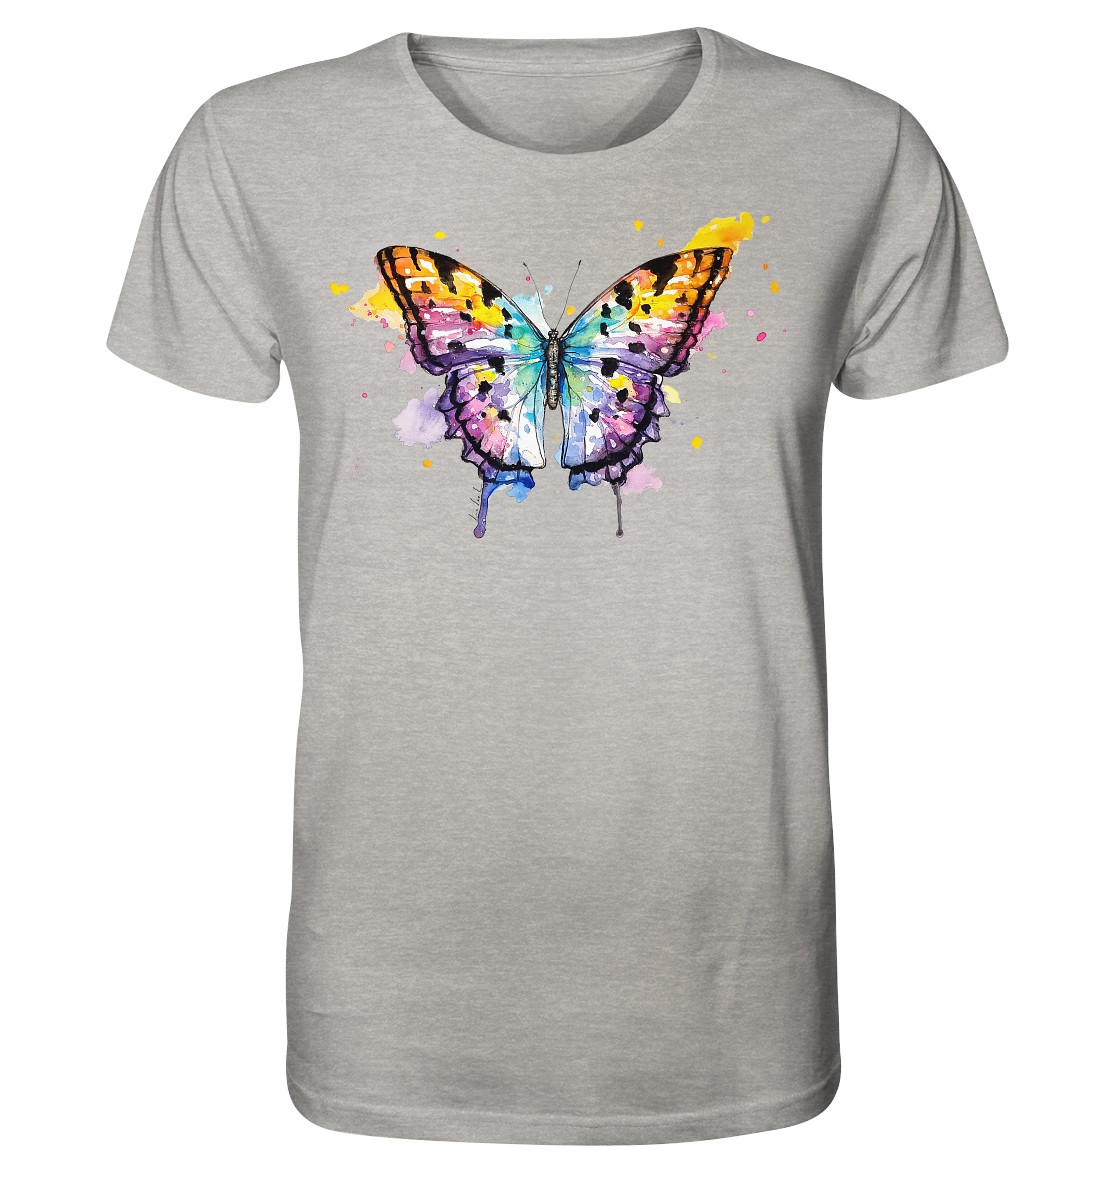 Bunter Schmetterling - Organic Shirt (meliert)